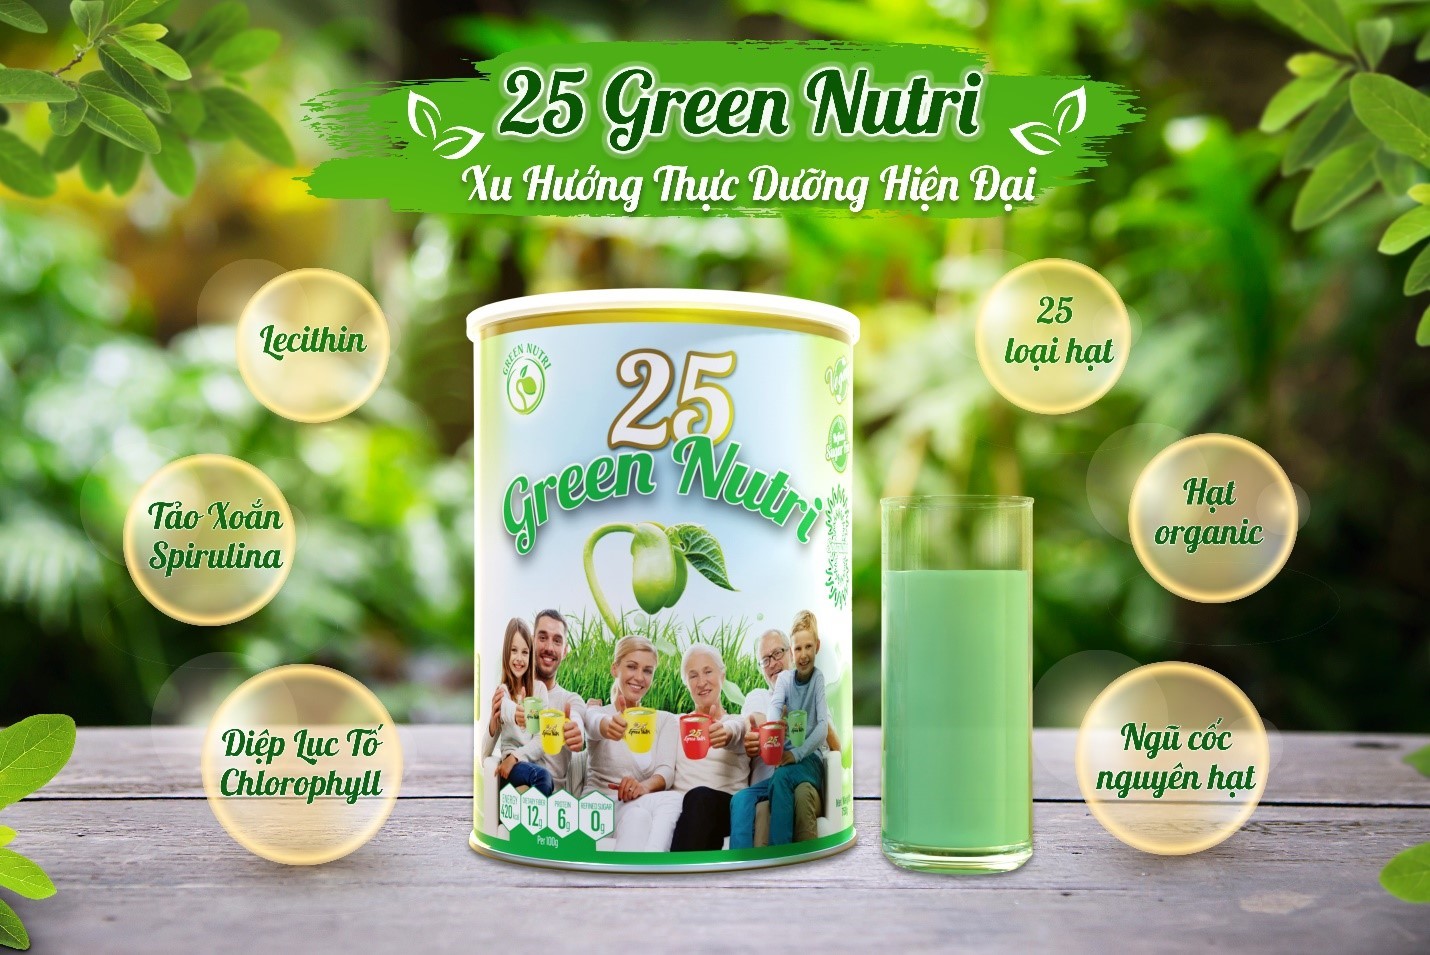 25 Green Nutri là sản phẩm phù hợp với người muốn tăng cường sức khỏe chủ động